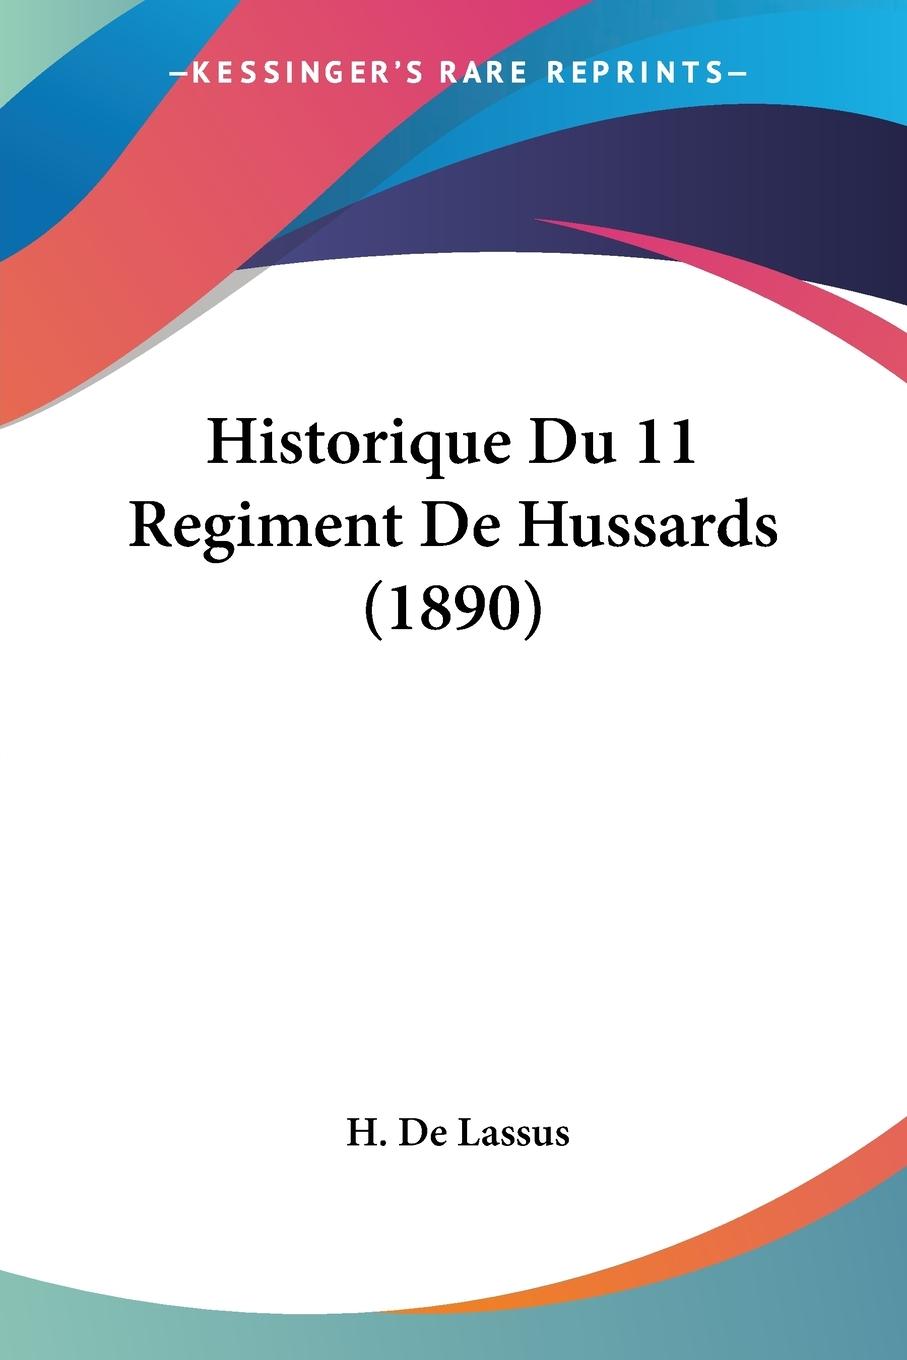 Historique Du 11 Regiment De Hussards (1890) - De Lassus, H.